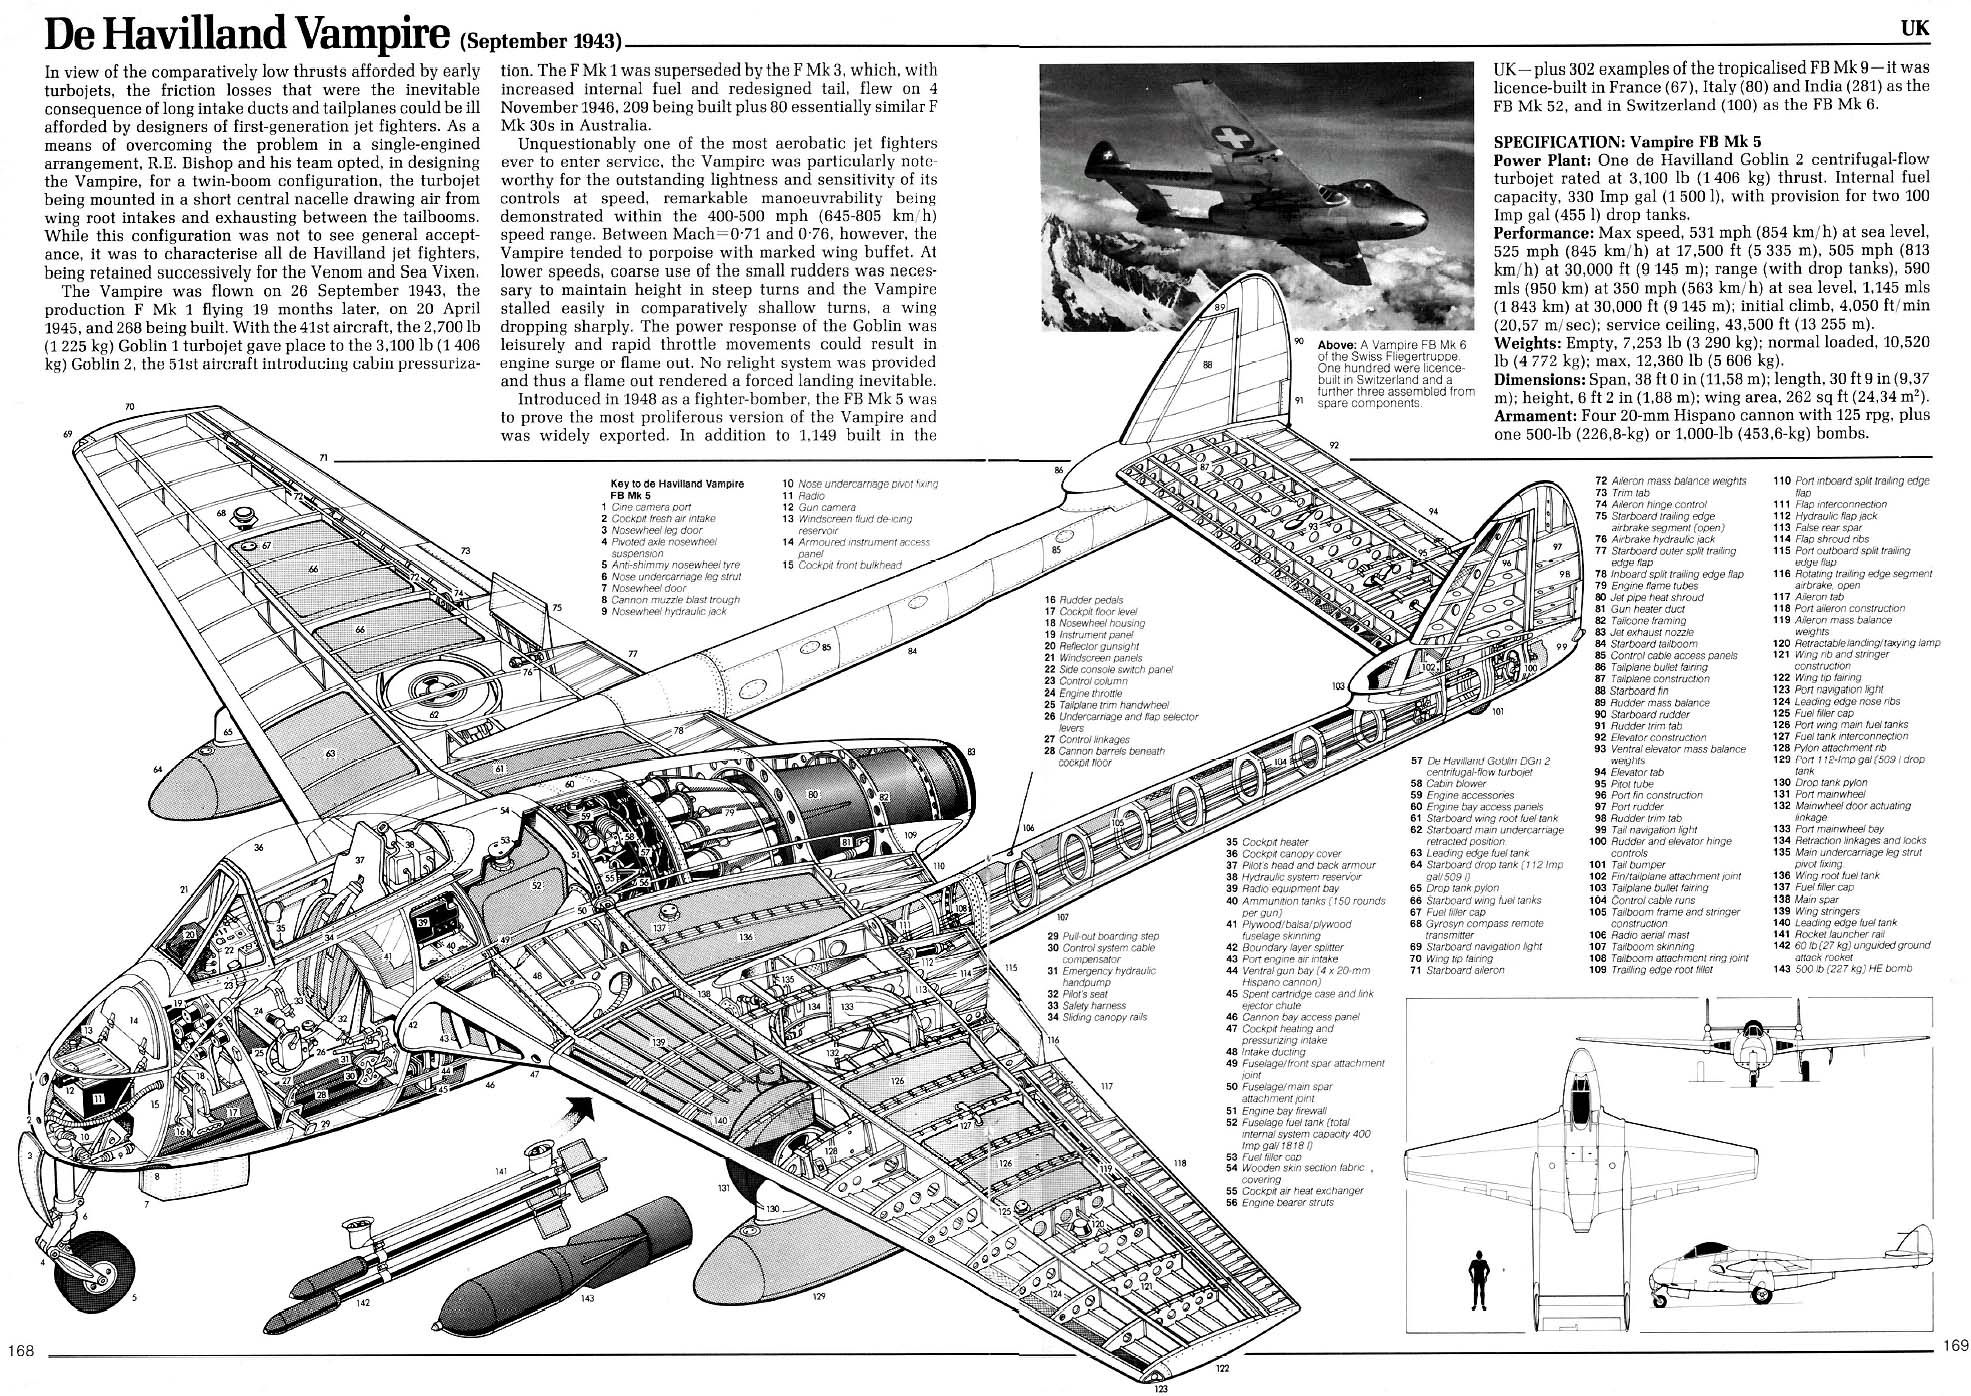 De_Havilland_Vampire | Aircraft of World War II - WW2Aircraft.net Forums